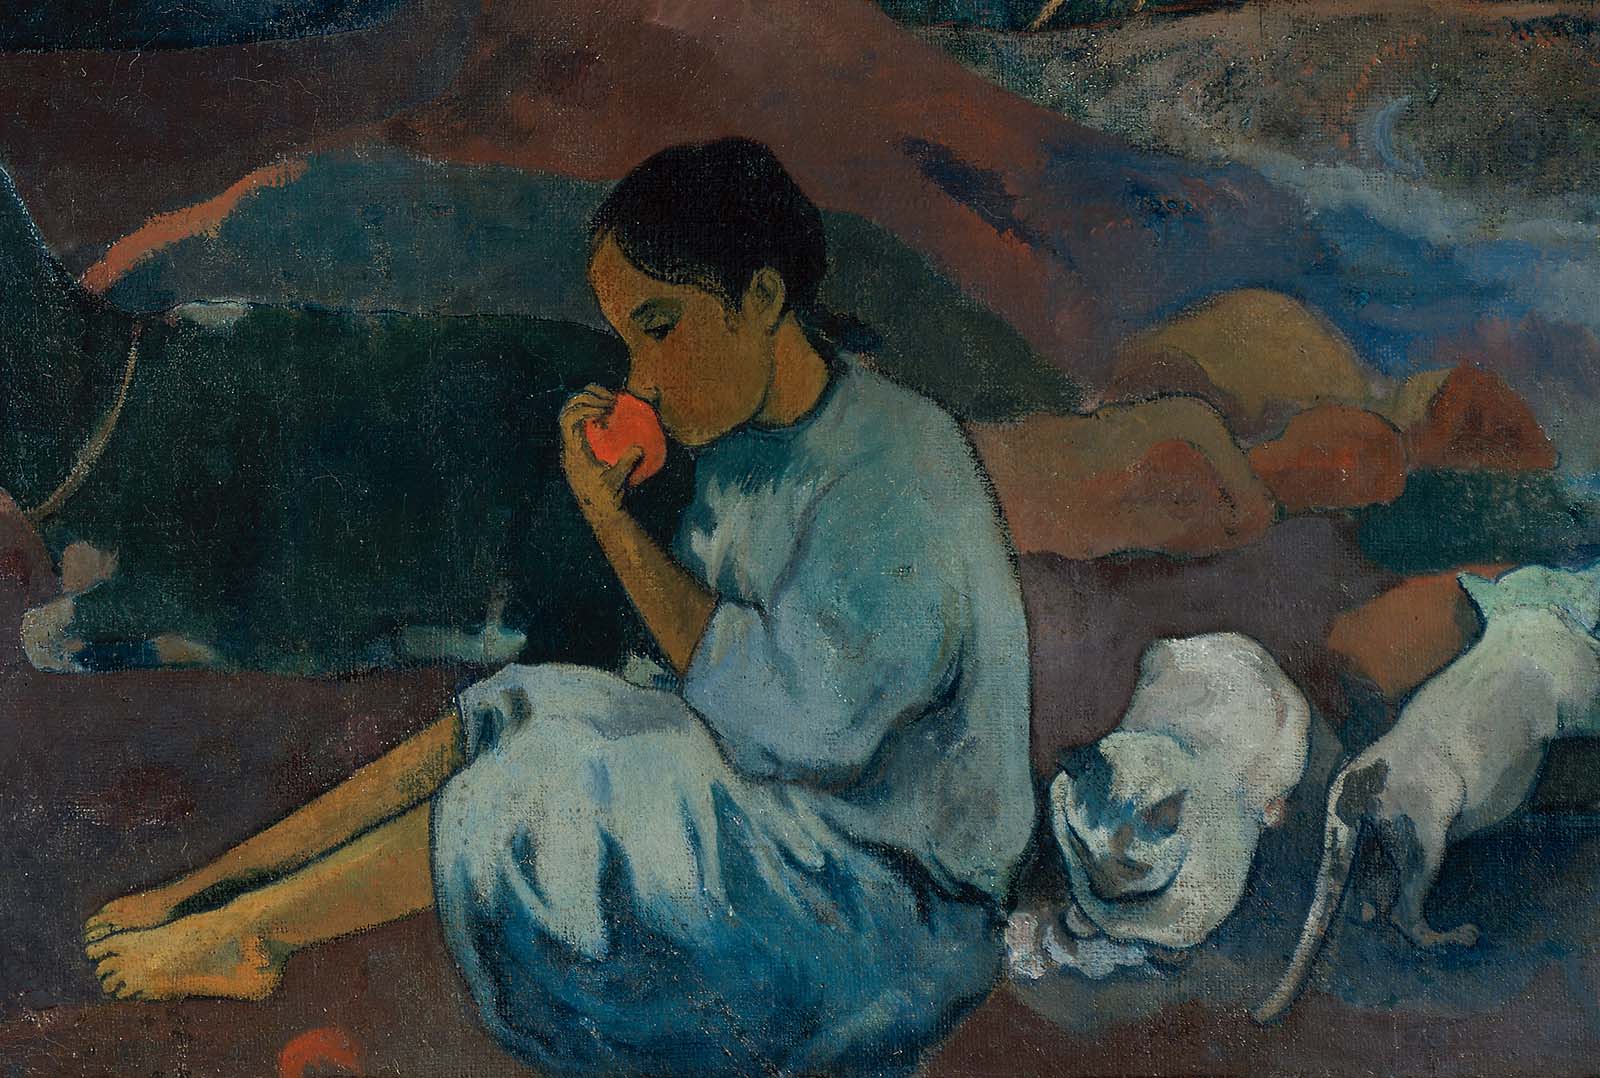 Paul+Gauguin-1848-1903 (423).jpg